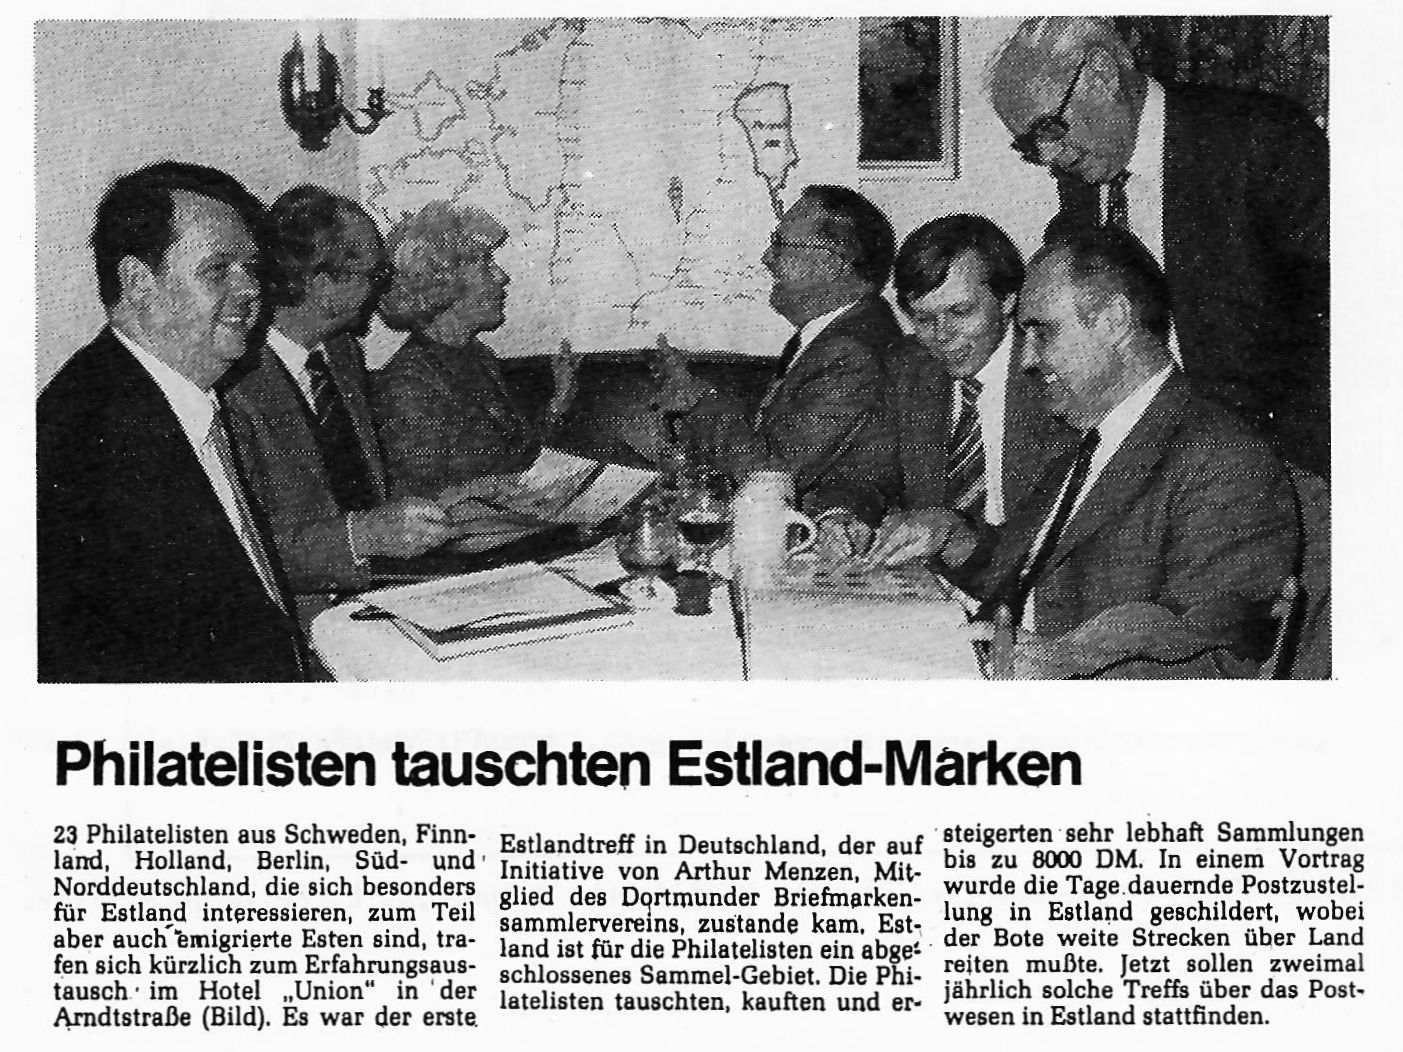 Zeitungsbericht der Ruhr-Nachrichten Nr. 263 vom 11.11.1981 über das erste Treffen der Estland-Philatelisten in Dortmund